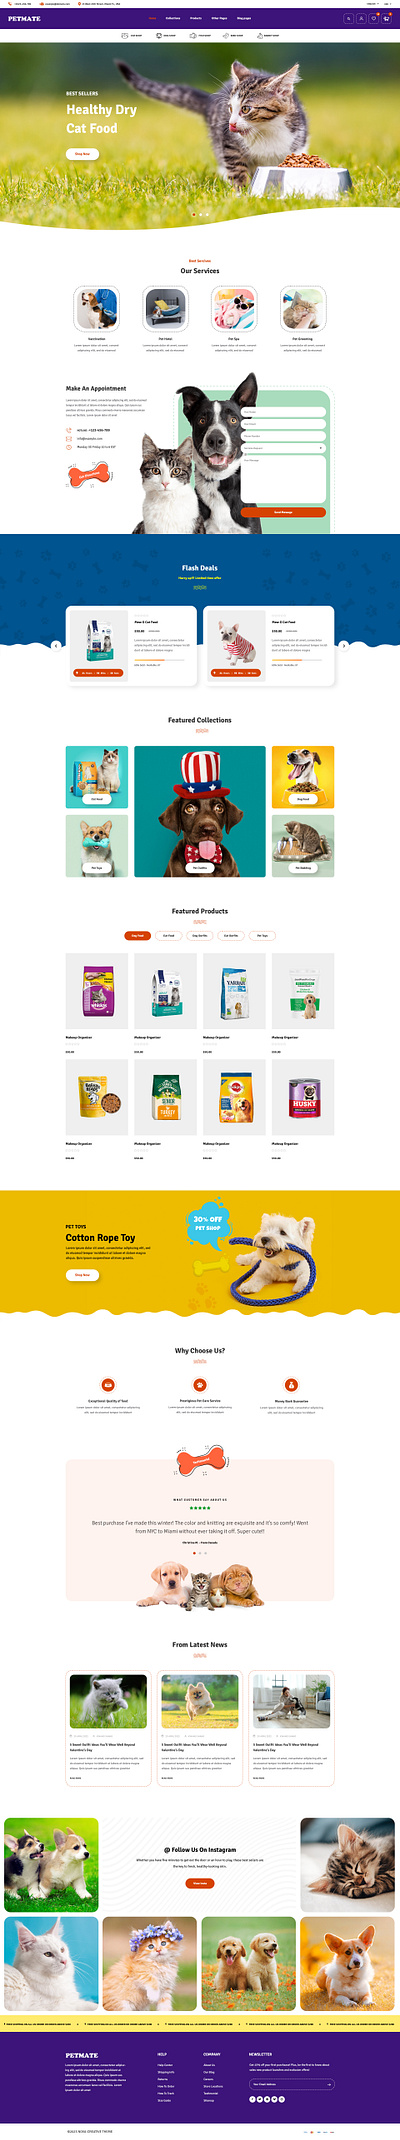 Mate - Pet Shop & Pet Care Shopify Theme design dropshipping shopify shopify store shopify template shopify theme ui web design website design